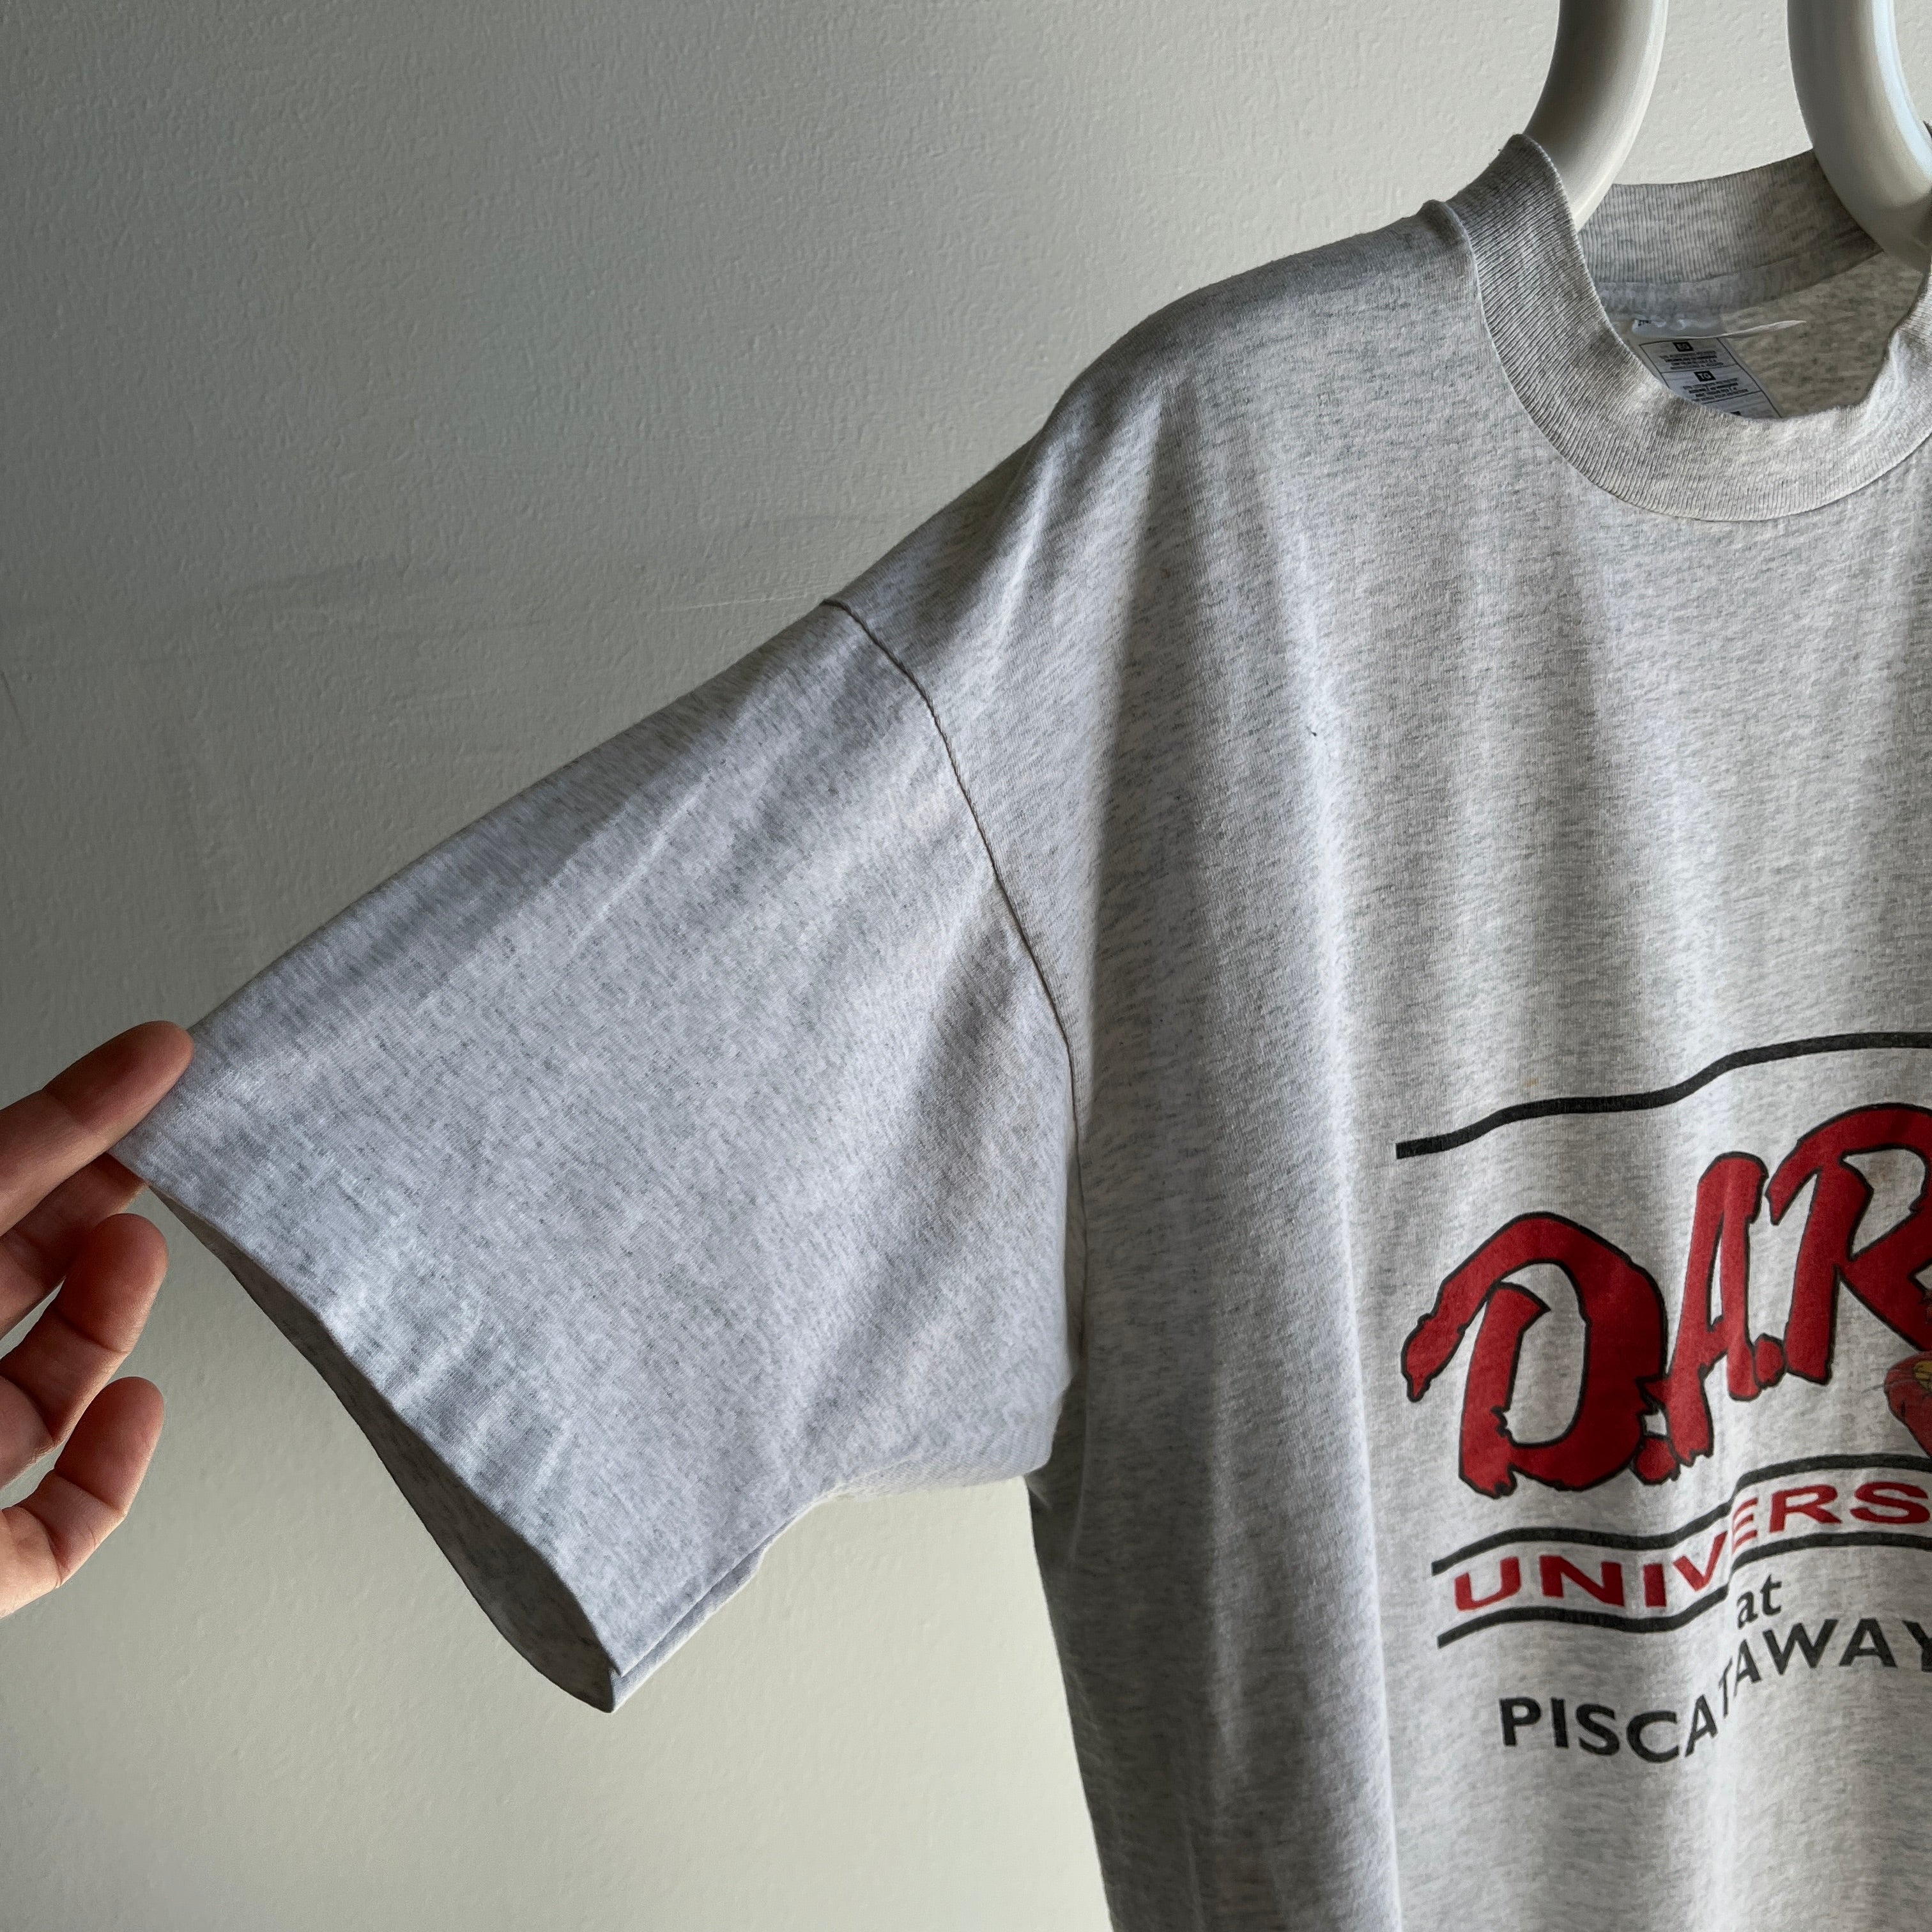 1980s DARE T-Shirt